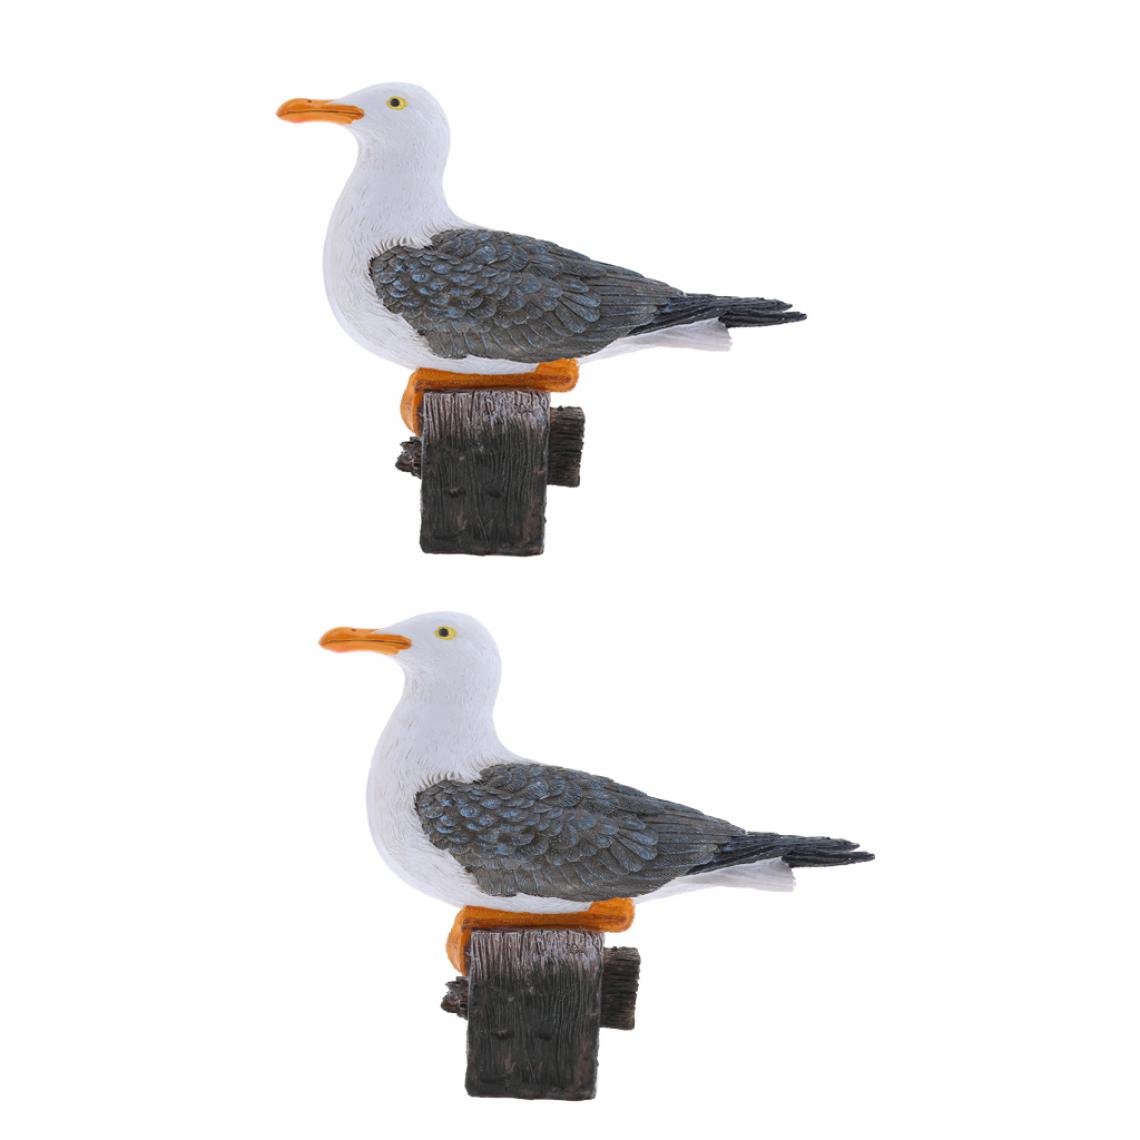 marque generique - 2pcs Figurines Mouette Oiseaux Simulation Animal Sculpture Décor Seagull Résine - Petite déco d'exterieur